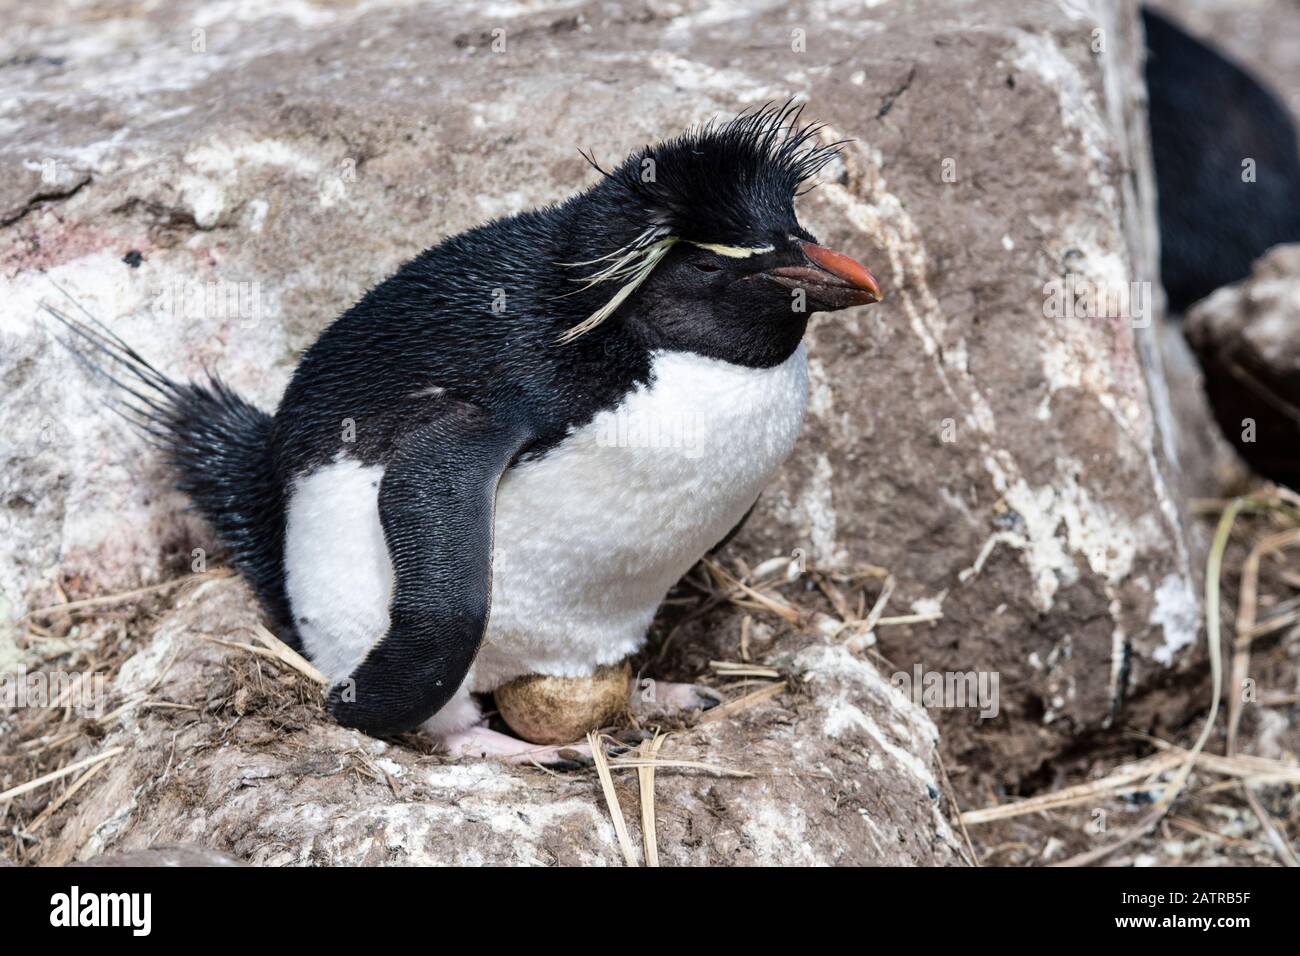 Pingüino de Rockhopper del Sur, crisovino de Eudyptes (crisocome), sentado en un huevo en nido en la isla de West Point, Islas Malvinas, Océano Atlántico Sur Foto de stock